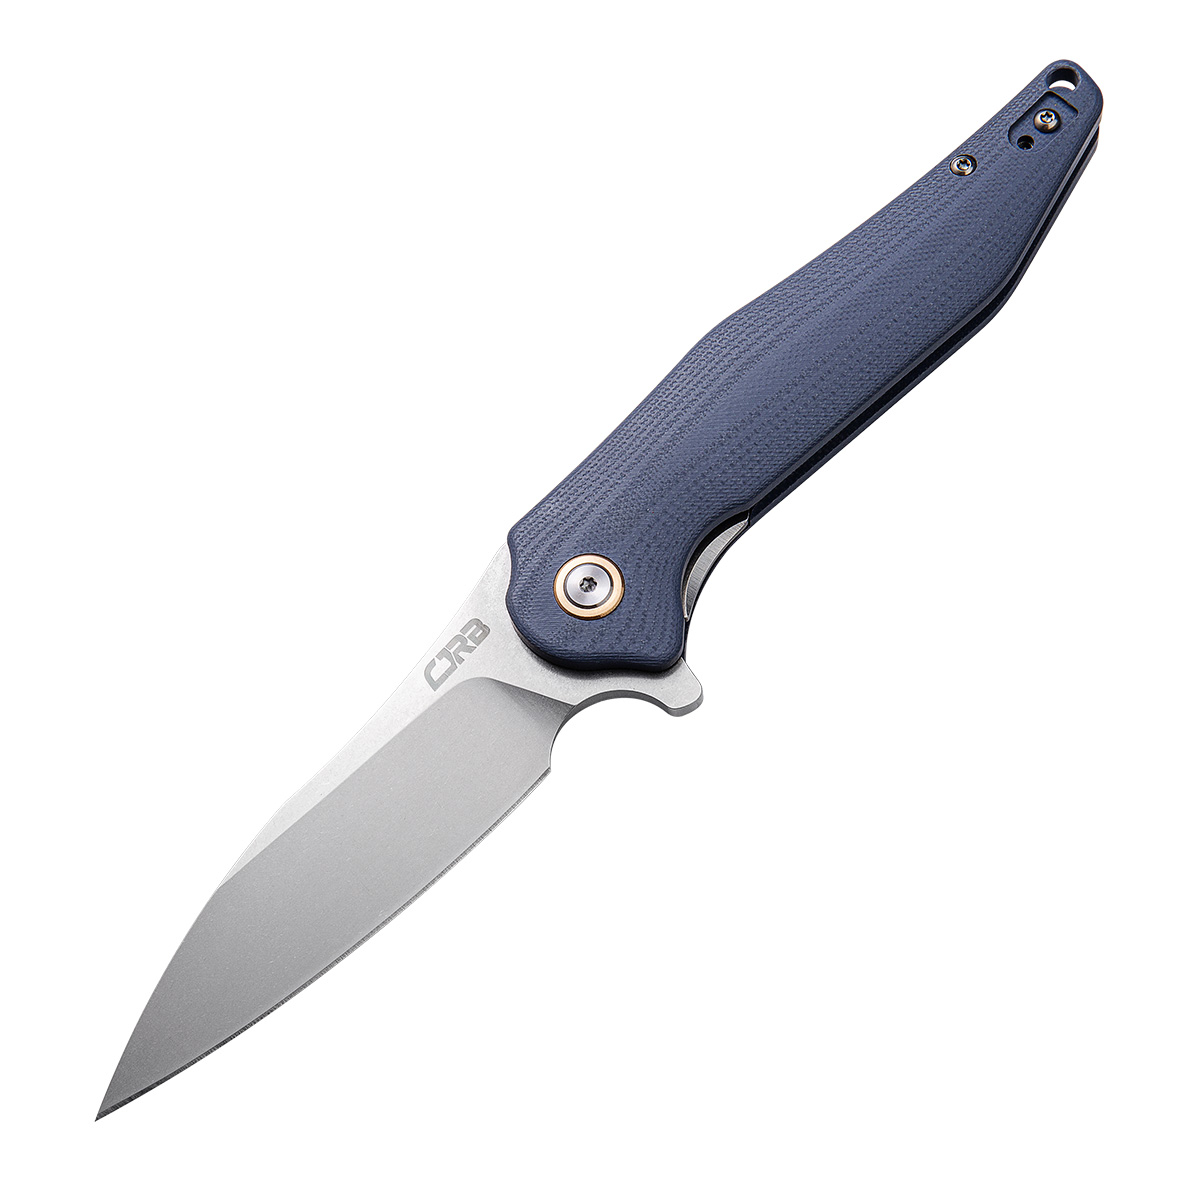 Складной нож CJRB Agave, сталь D2, рукоять G10, синий, Бренды, CJRB Cutlery